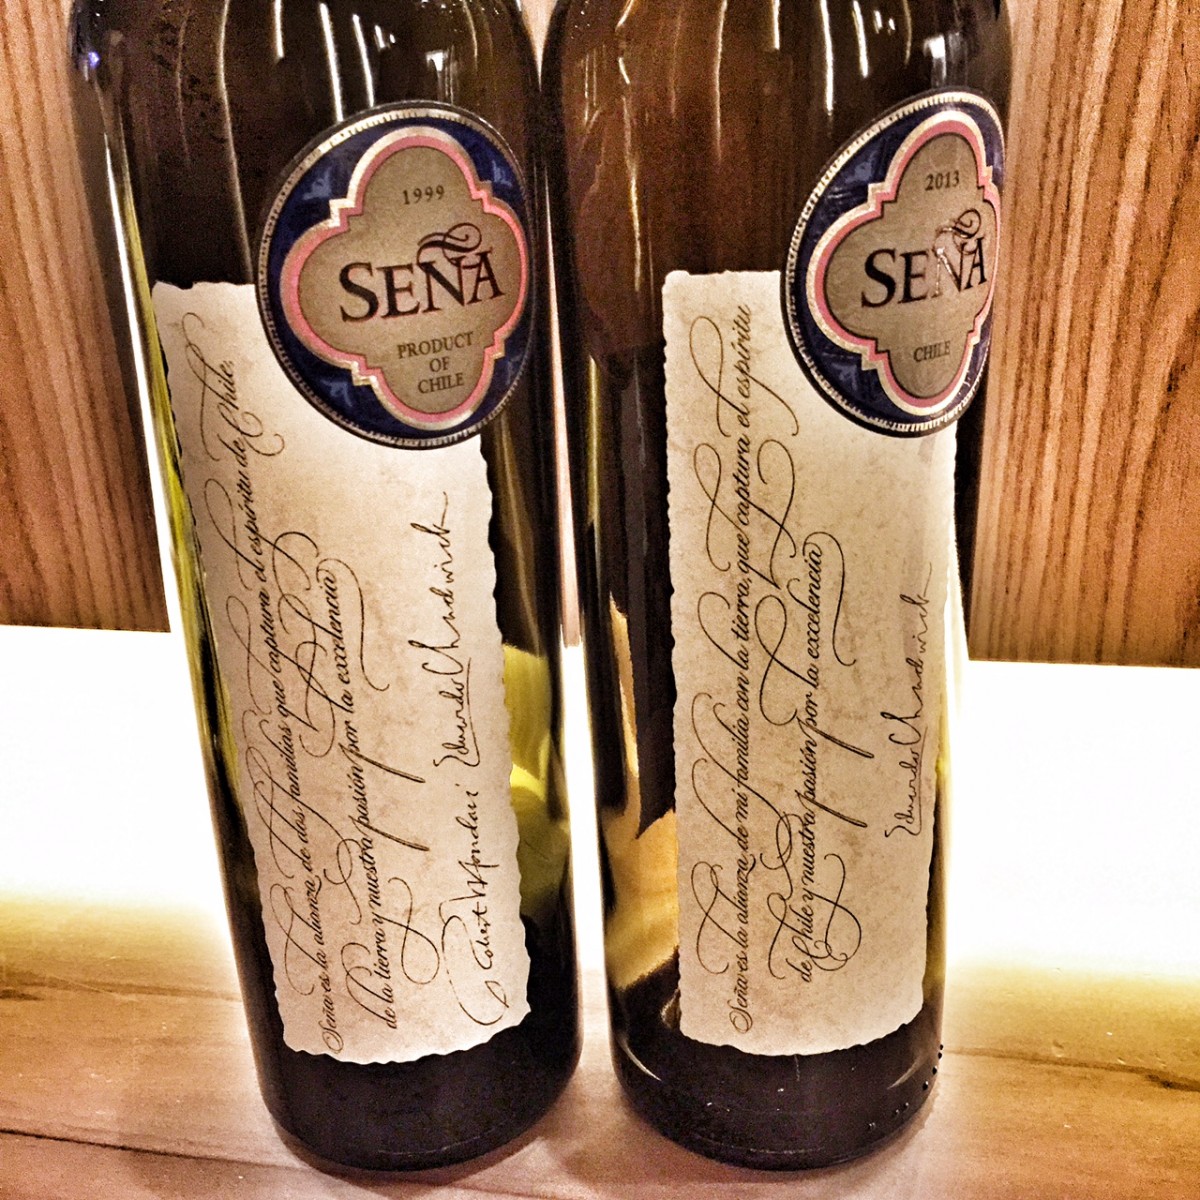 Sena Chilean wines